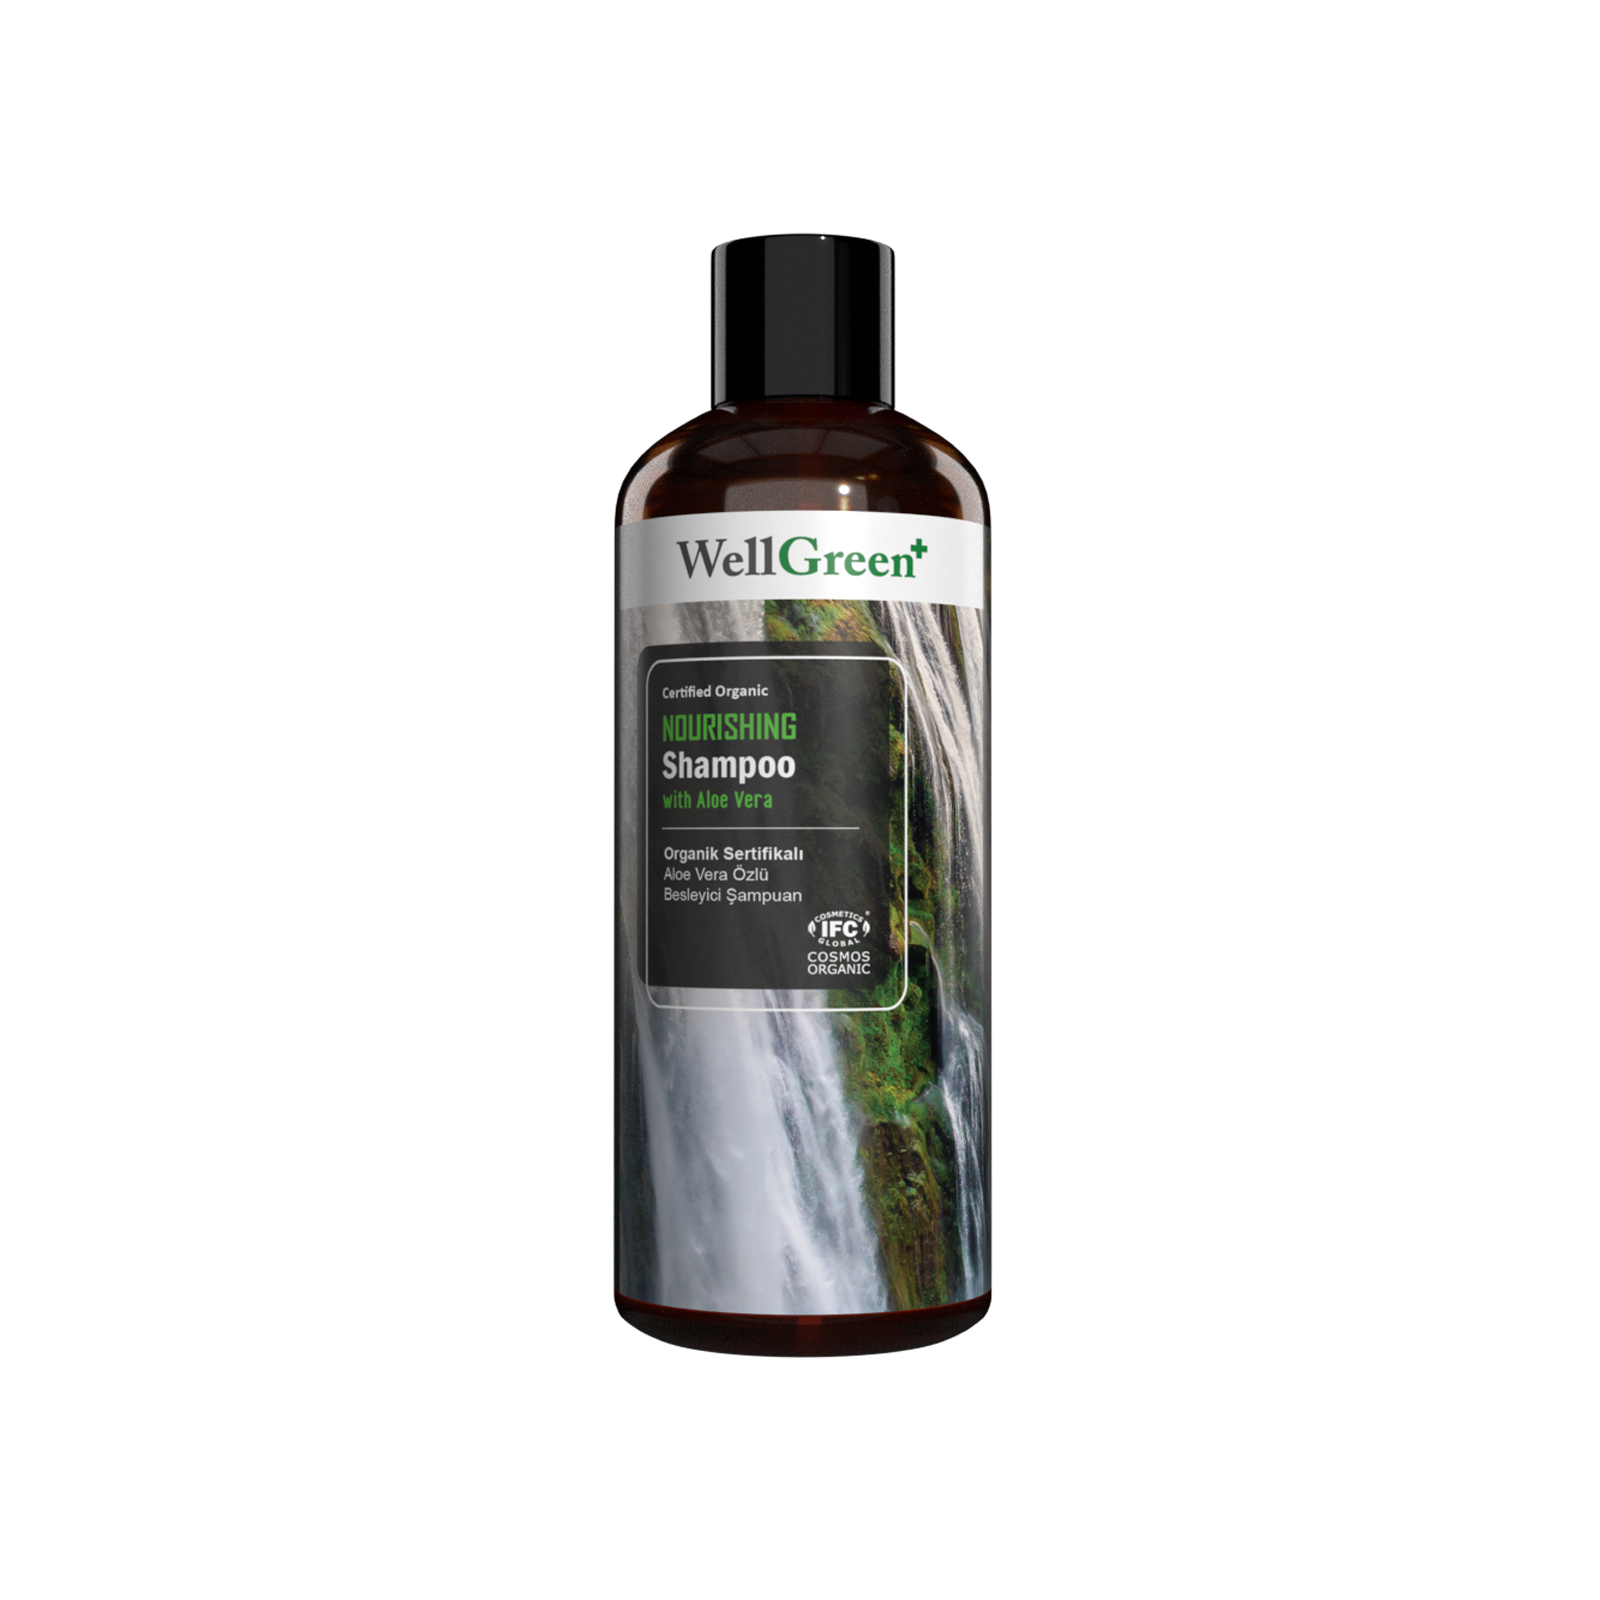 WellGreen+ Organik Sertifikalı Aloe Vera Özlü Besleyici Şampuan - 400ml